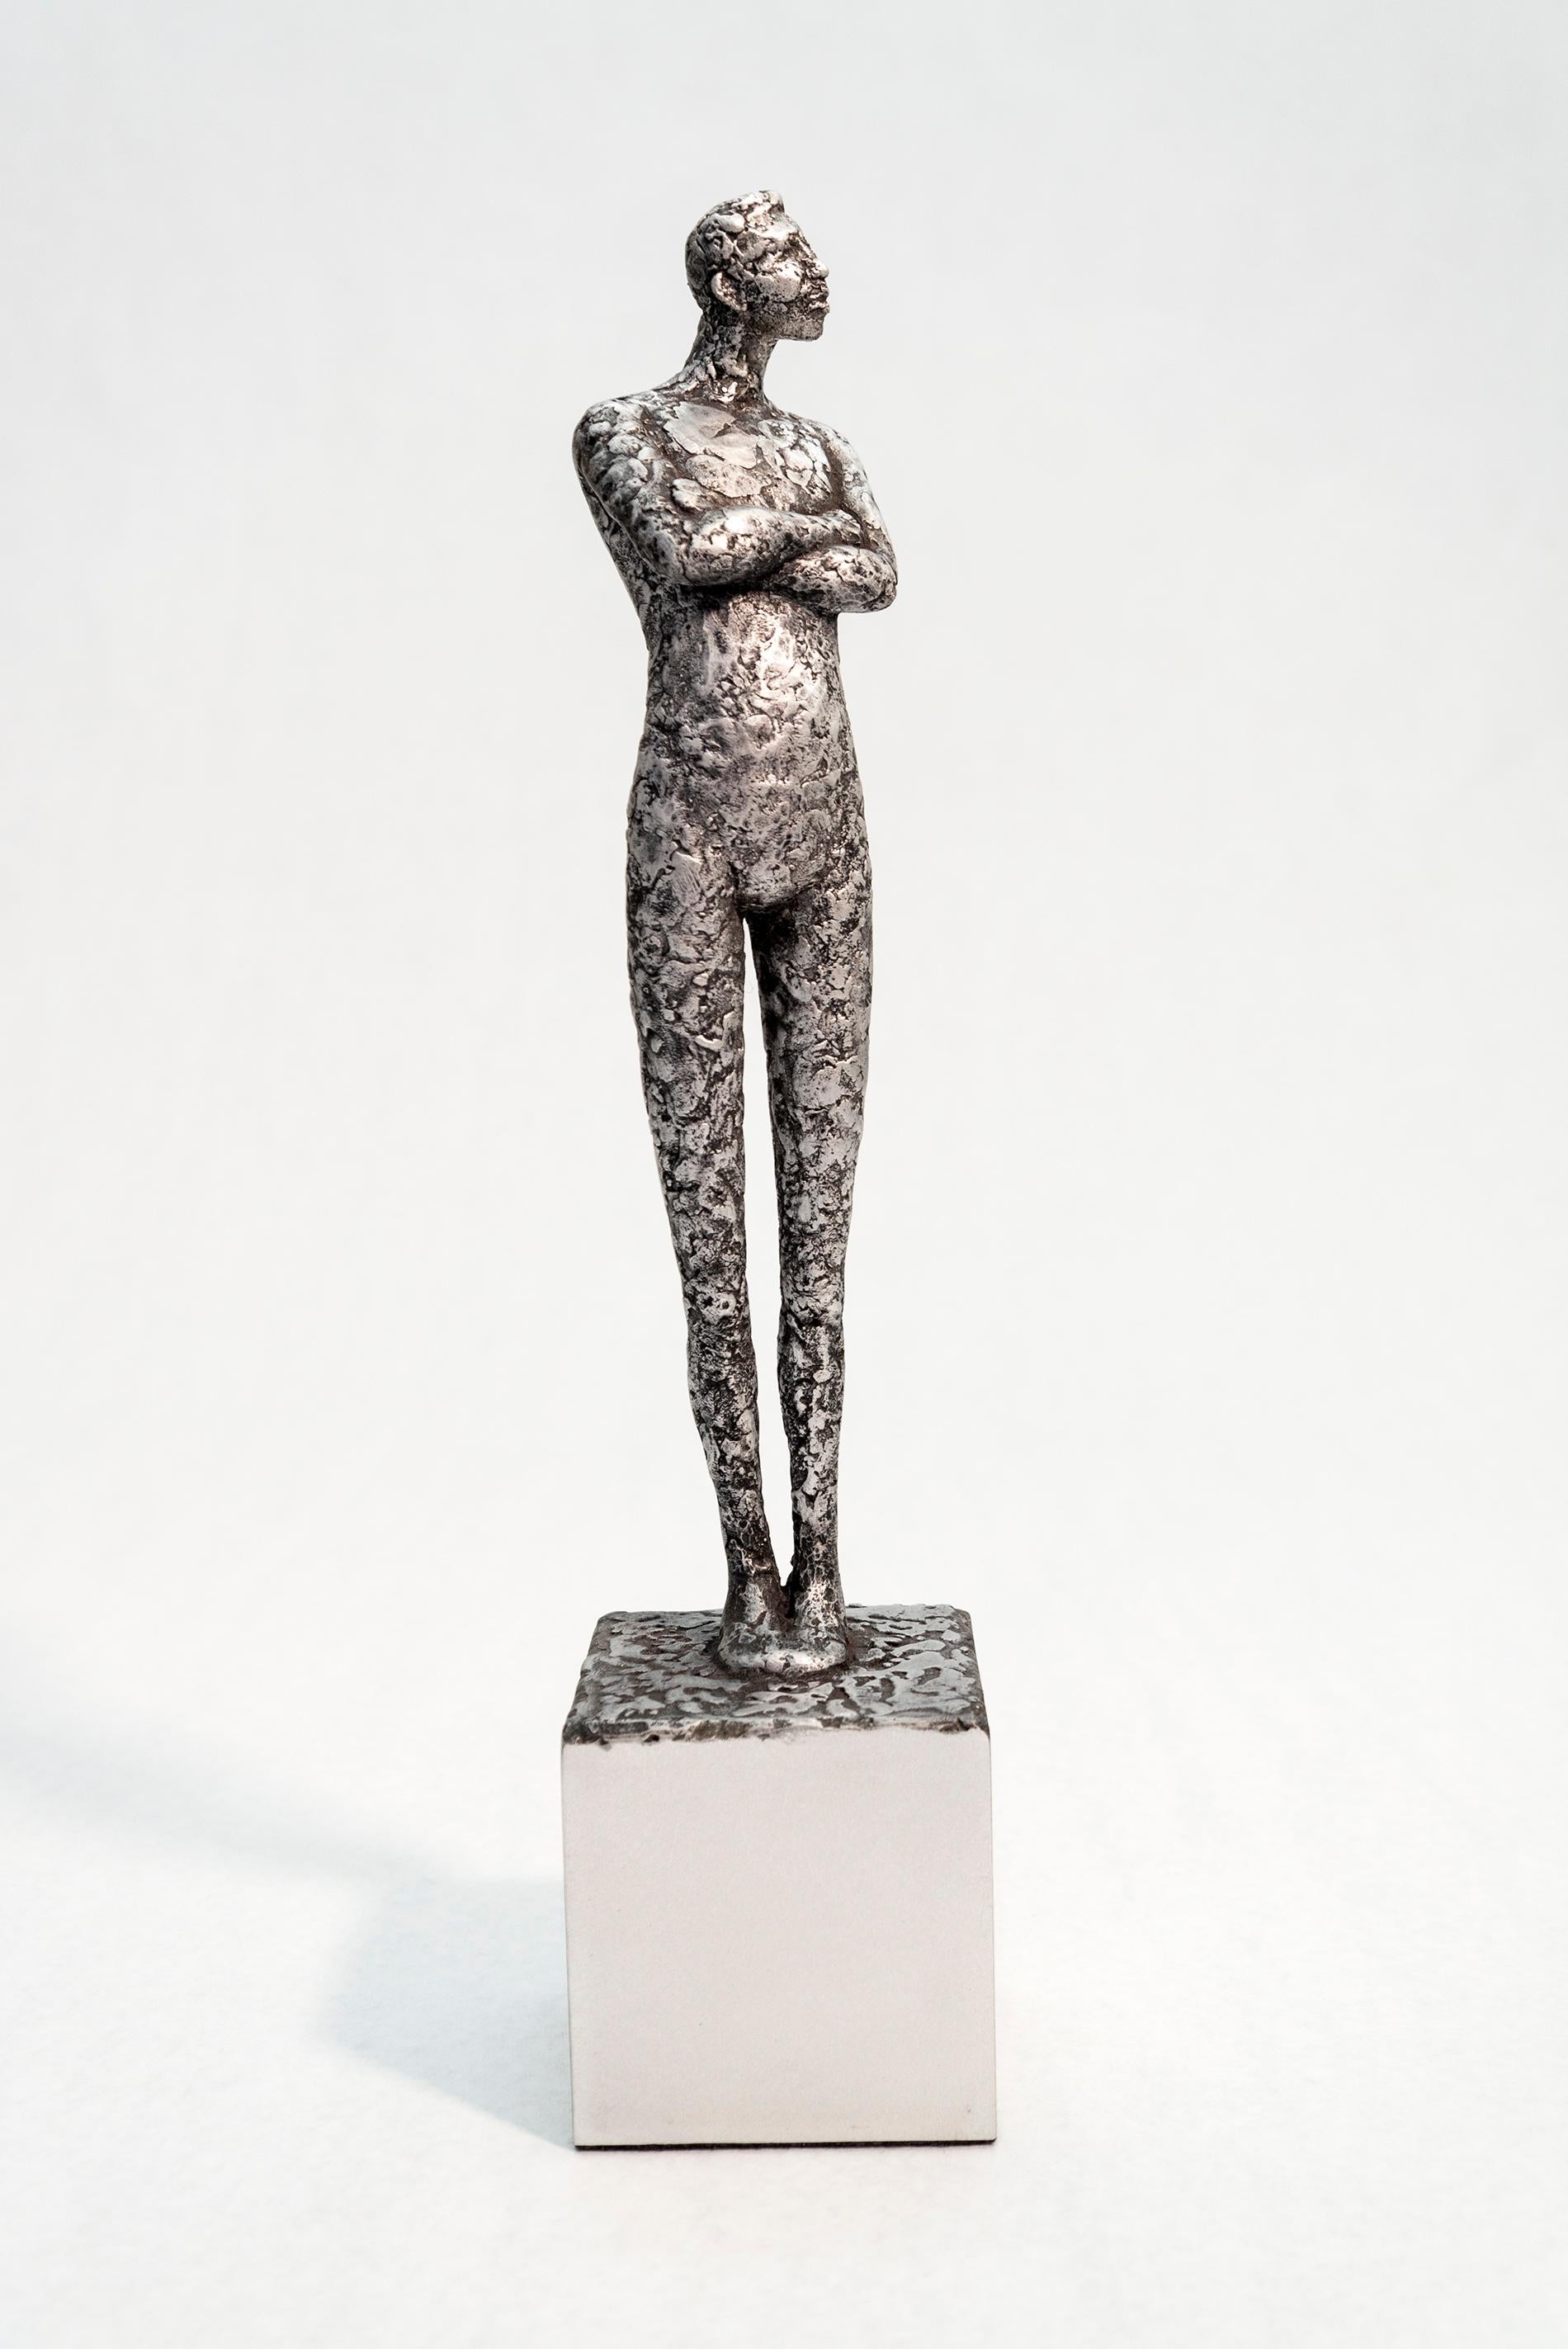 Alexis - expressive, textured, male, figurative, cast aluminum sculpture - Sculpture by Paul Duval